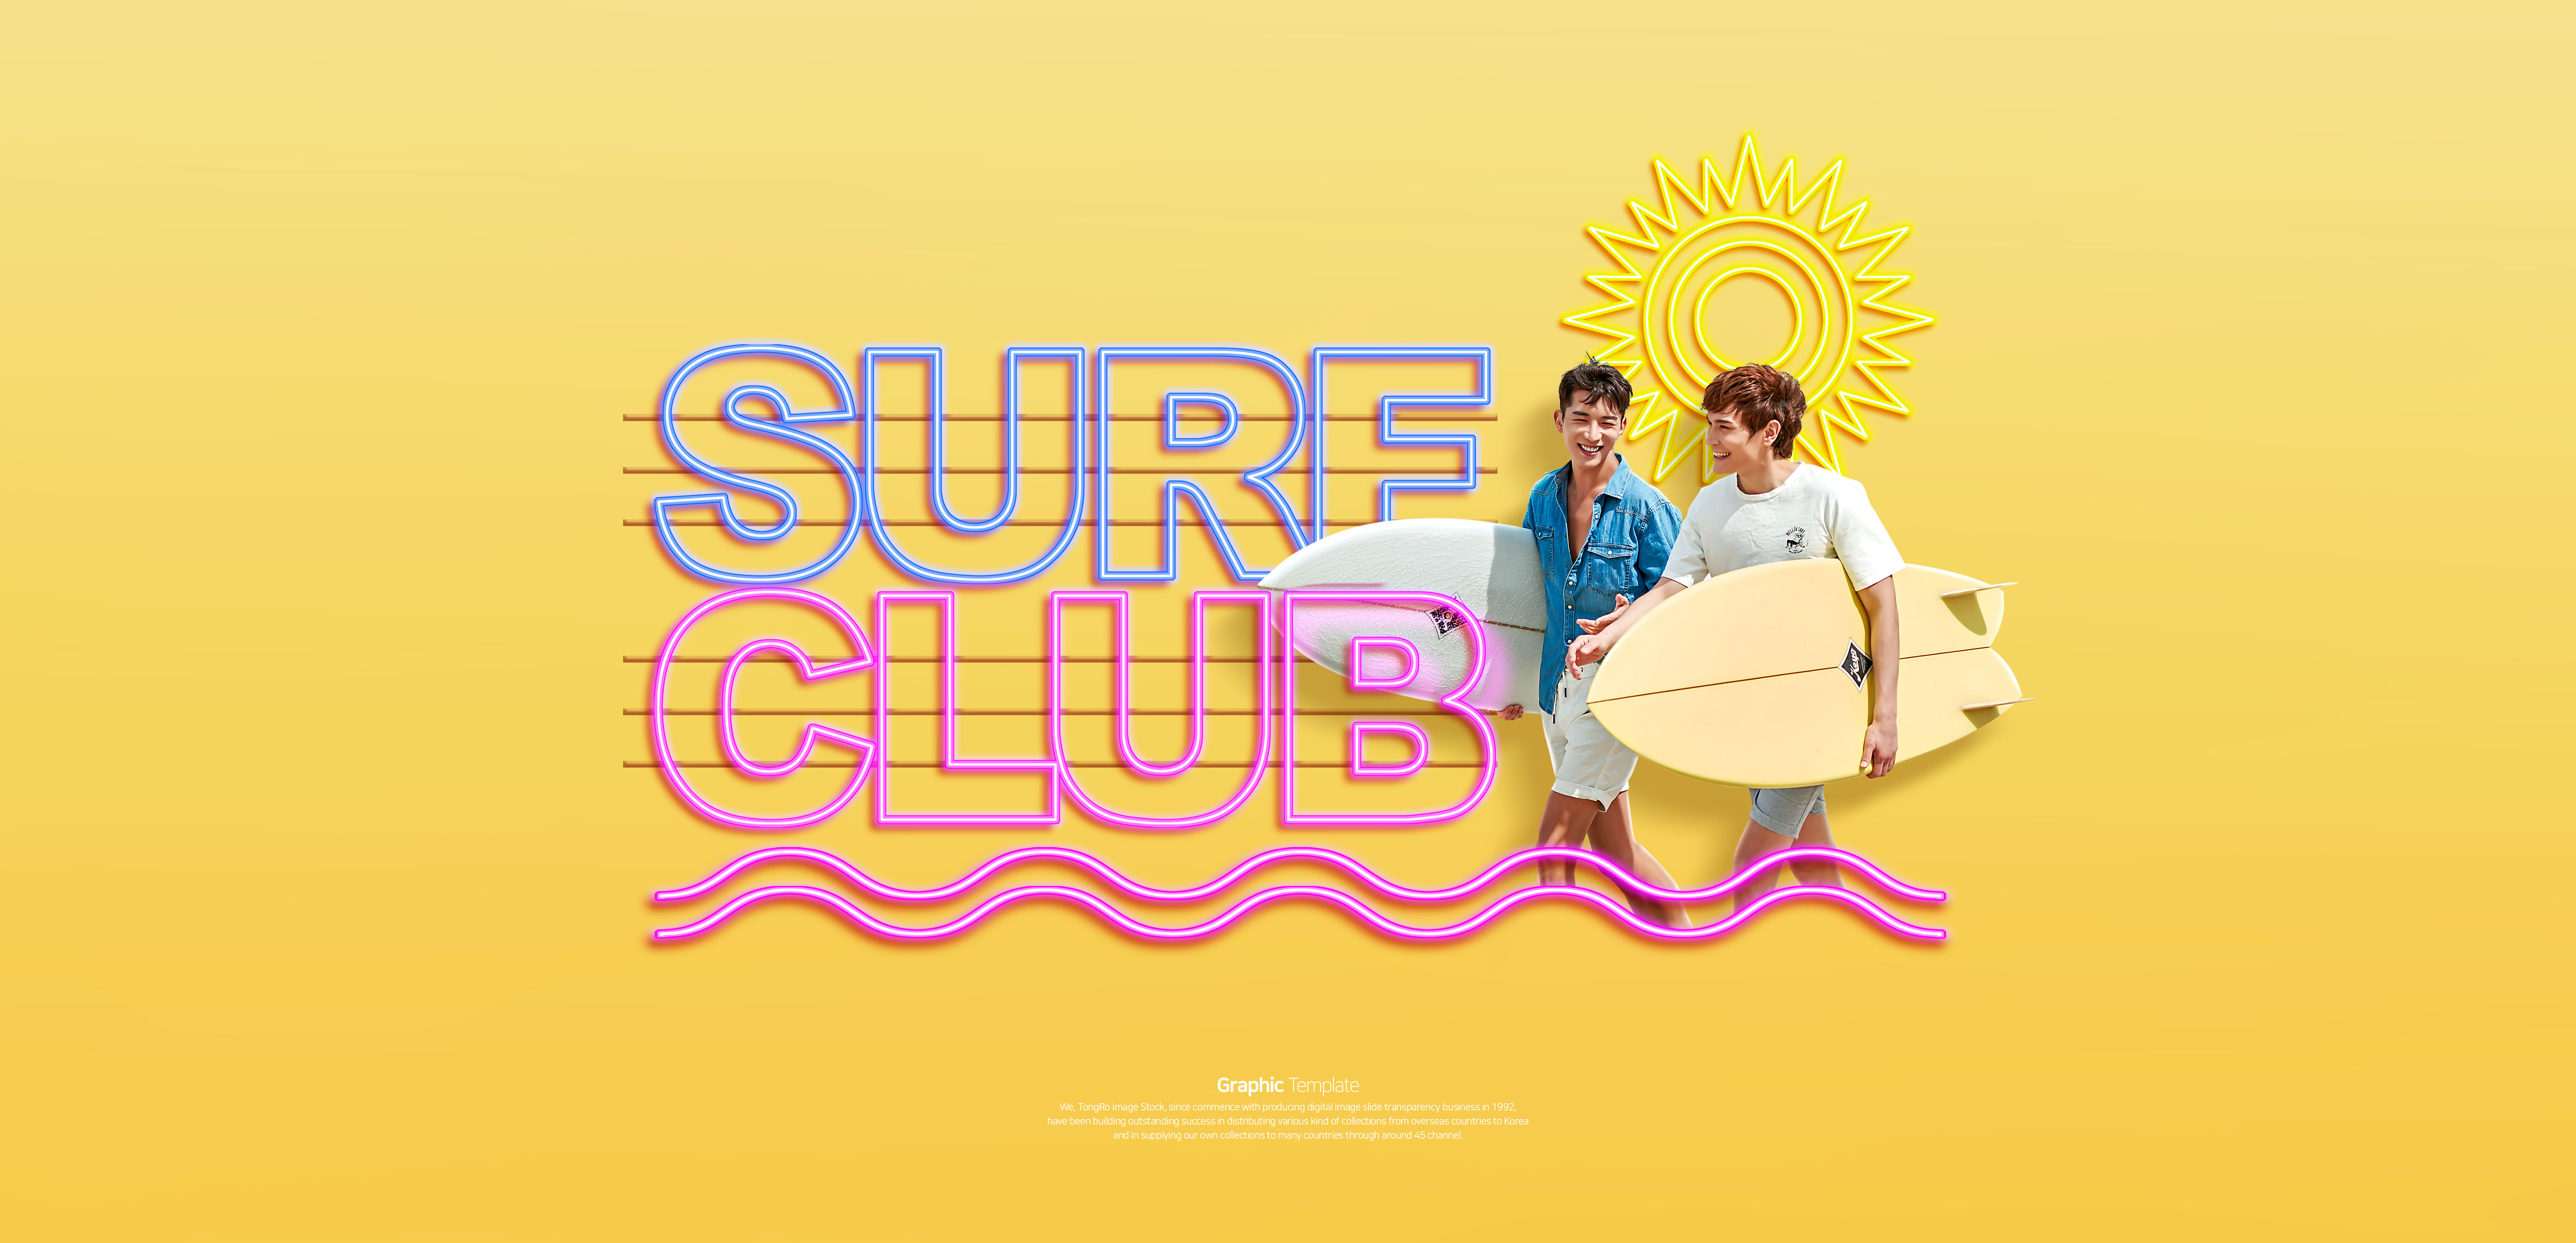 冲浪俱乐部活动宣传Banner第一素材精选广告模板插图